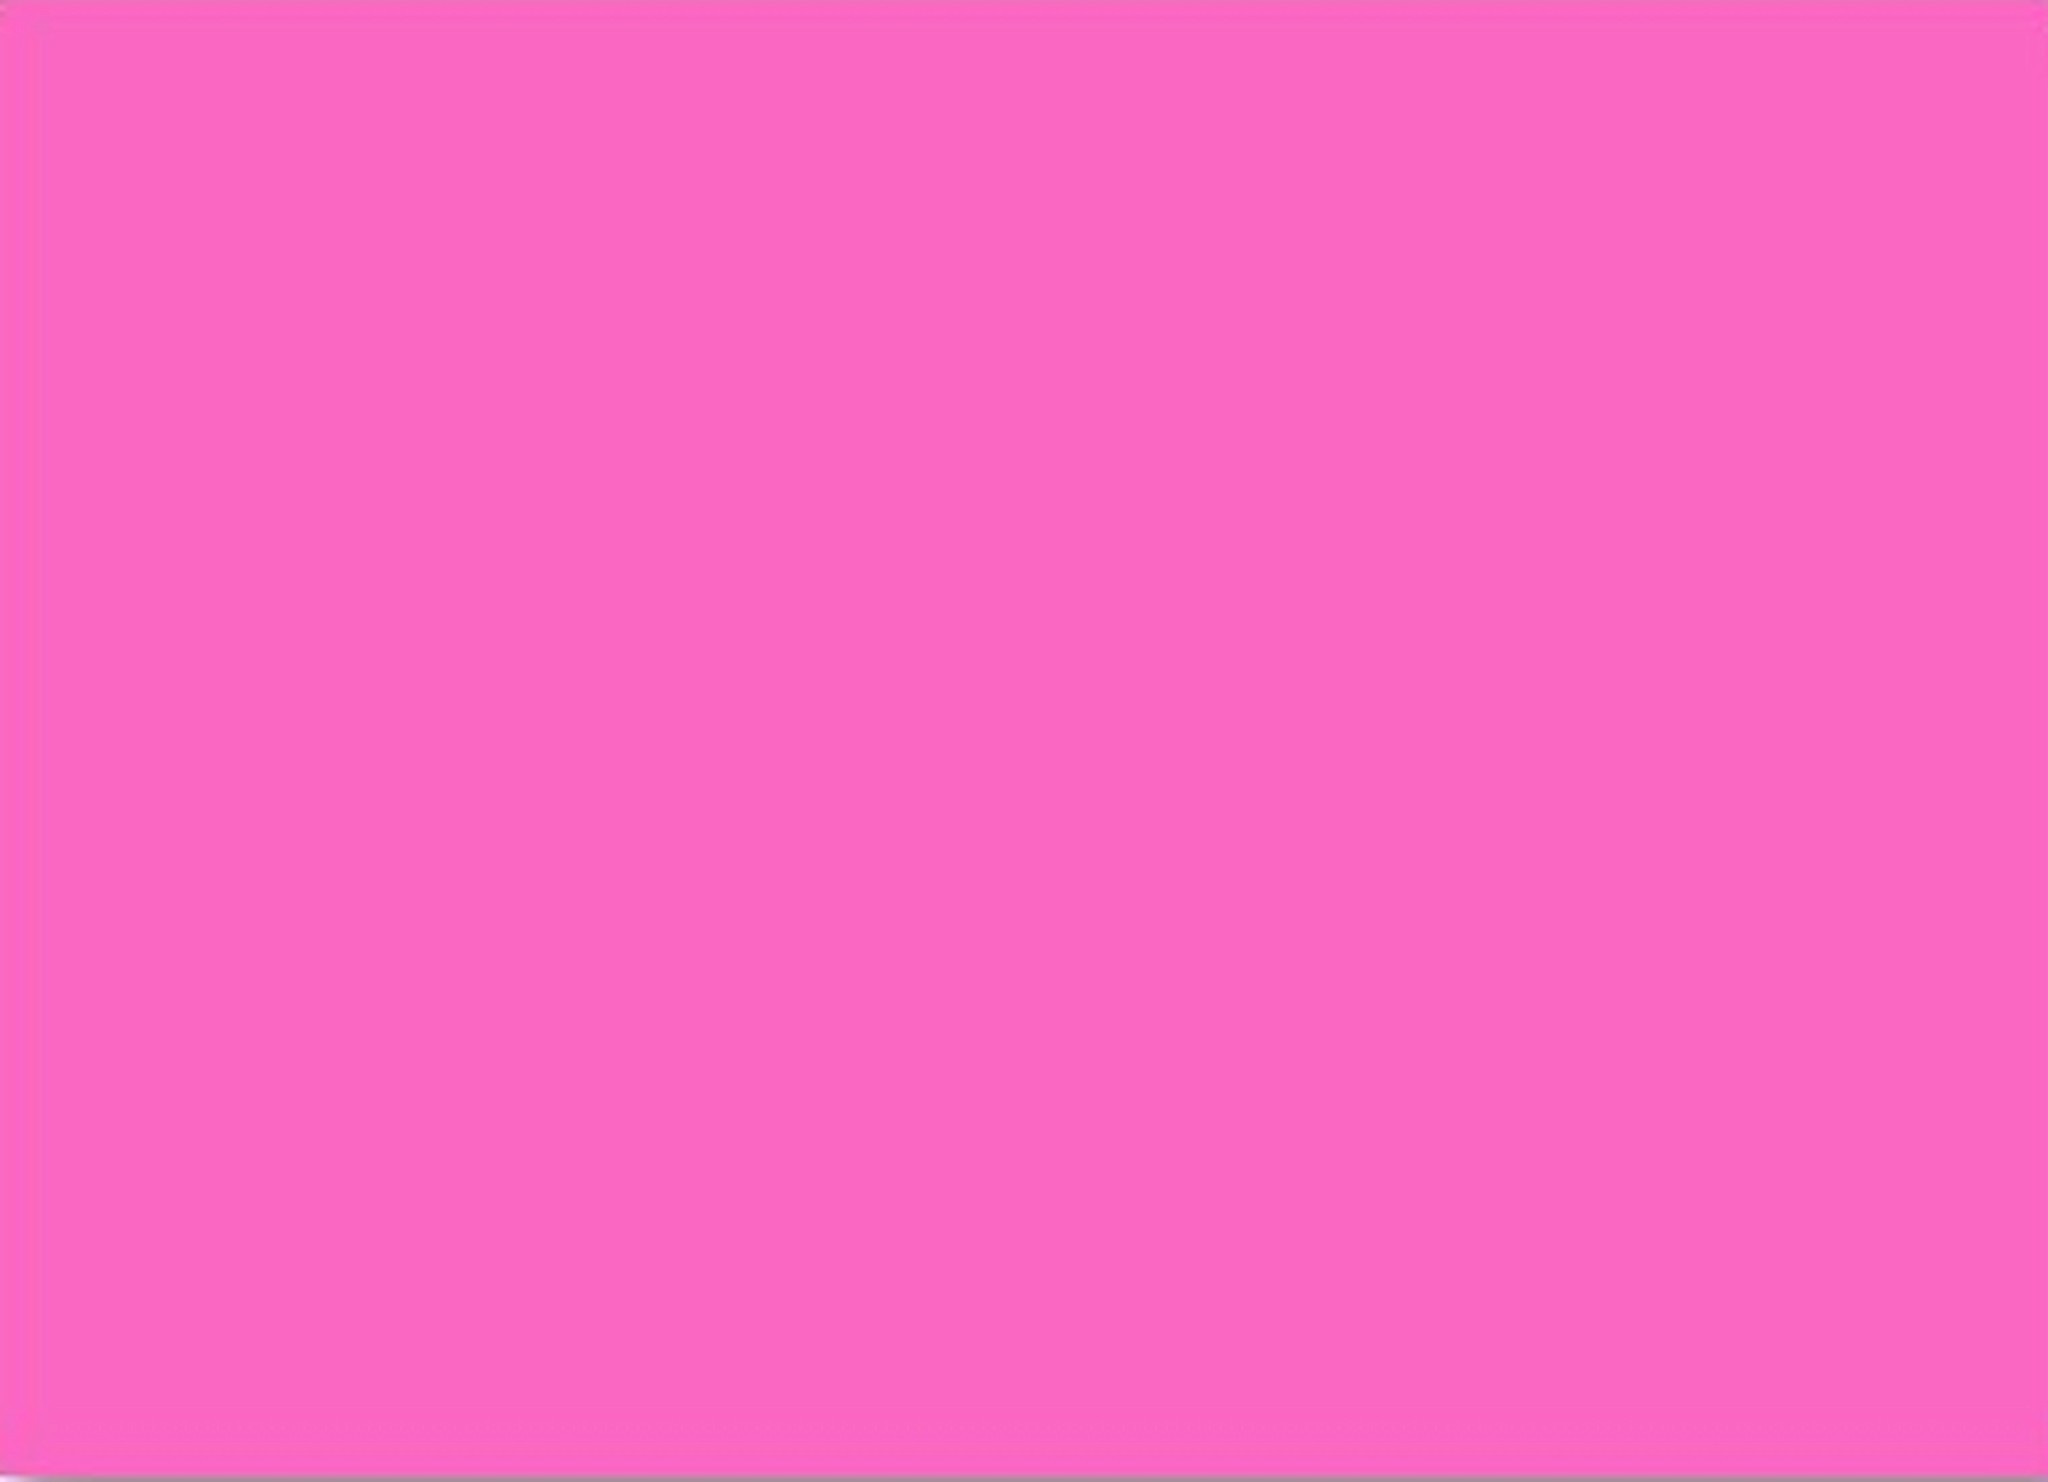 Nếu bạn muốn thể hiện cá tính riêng của mình, hãy cập nhật ngay hình nền màu hồng đậm này. Tông màu đậm nổi bật, mạnh mẽ là điểm nhấn hoàn hảo cho điện thoại của bạn. Hãy để hình nền này thể hiện phong cách của bạn.